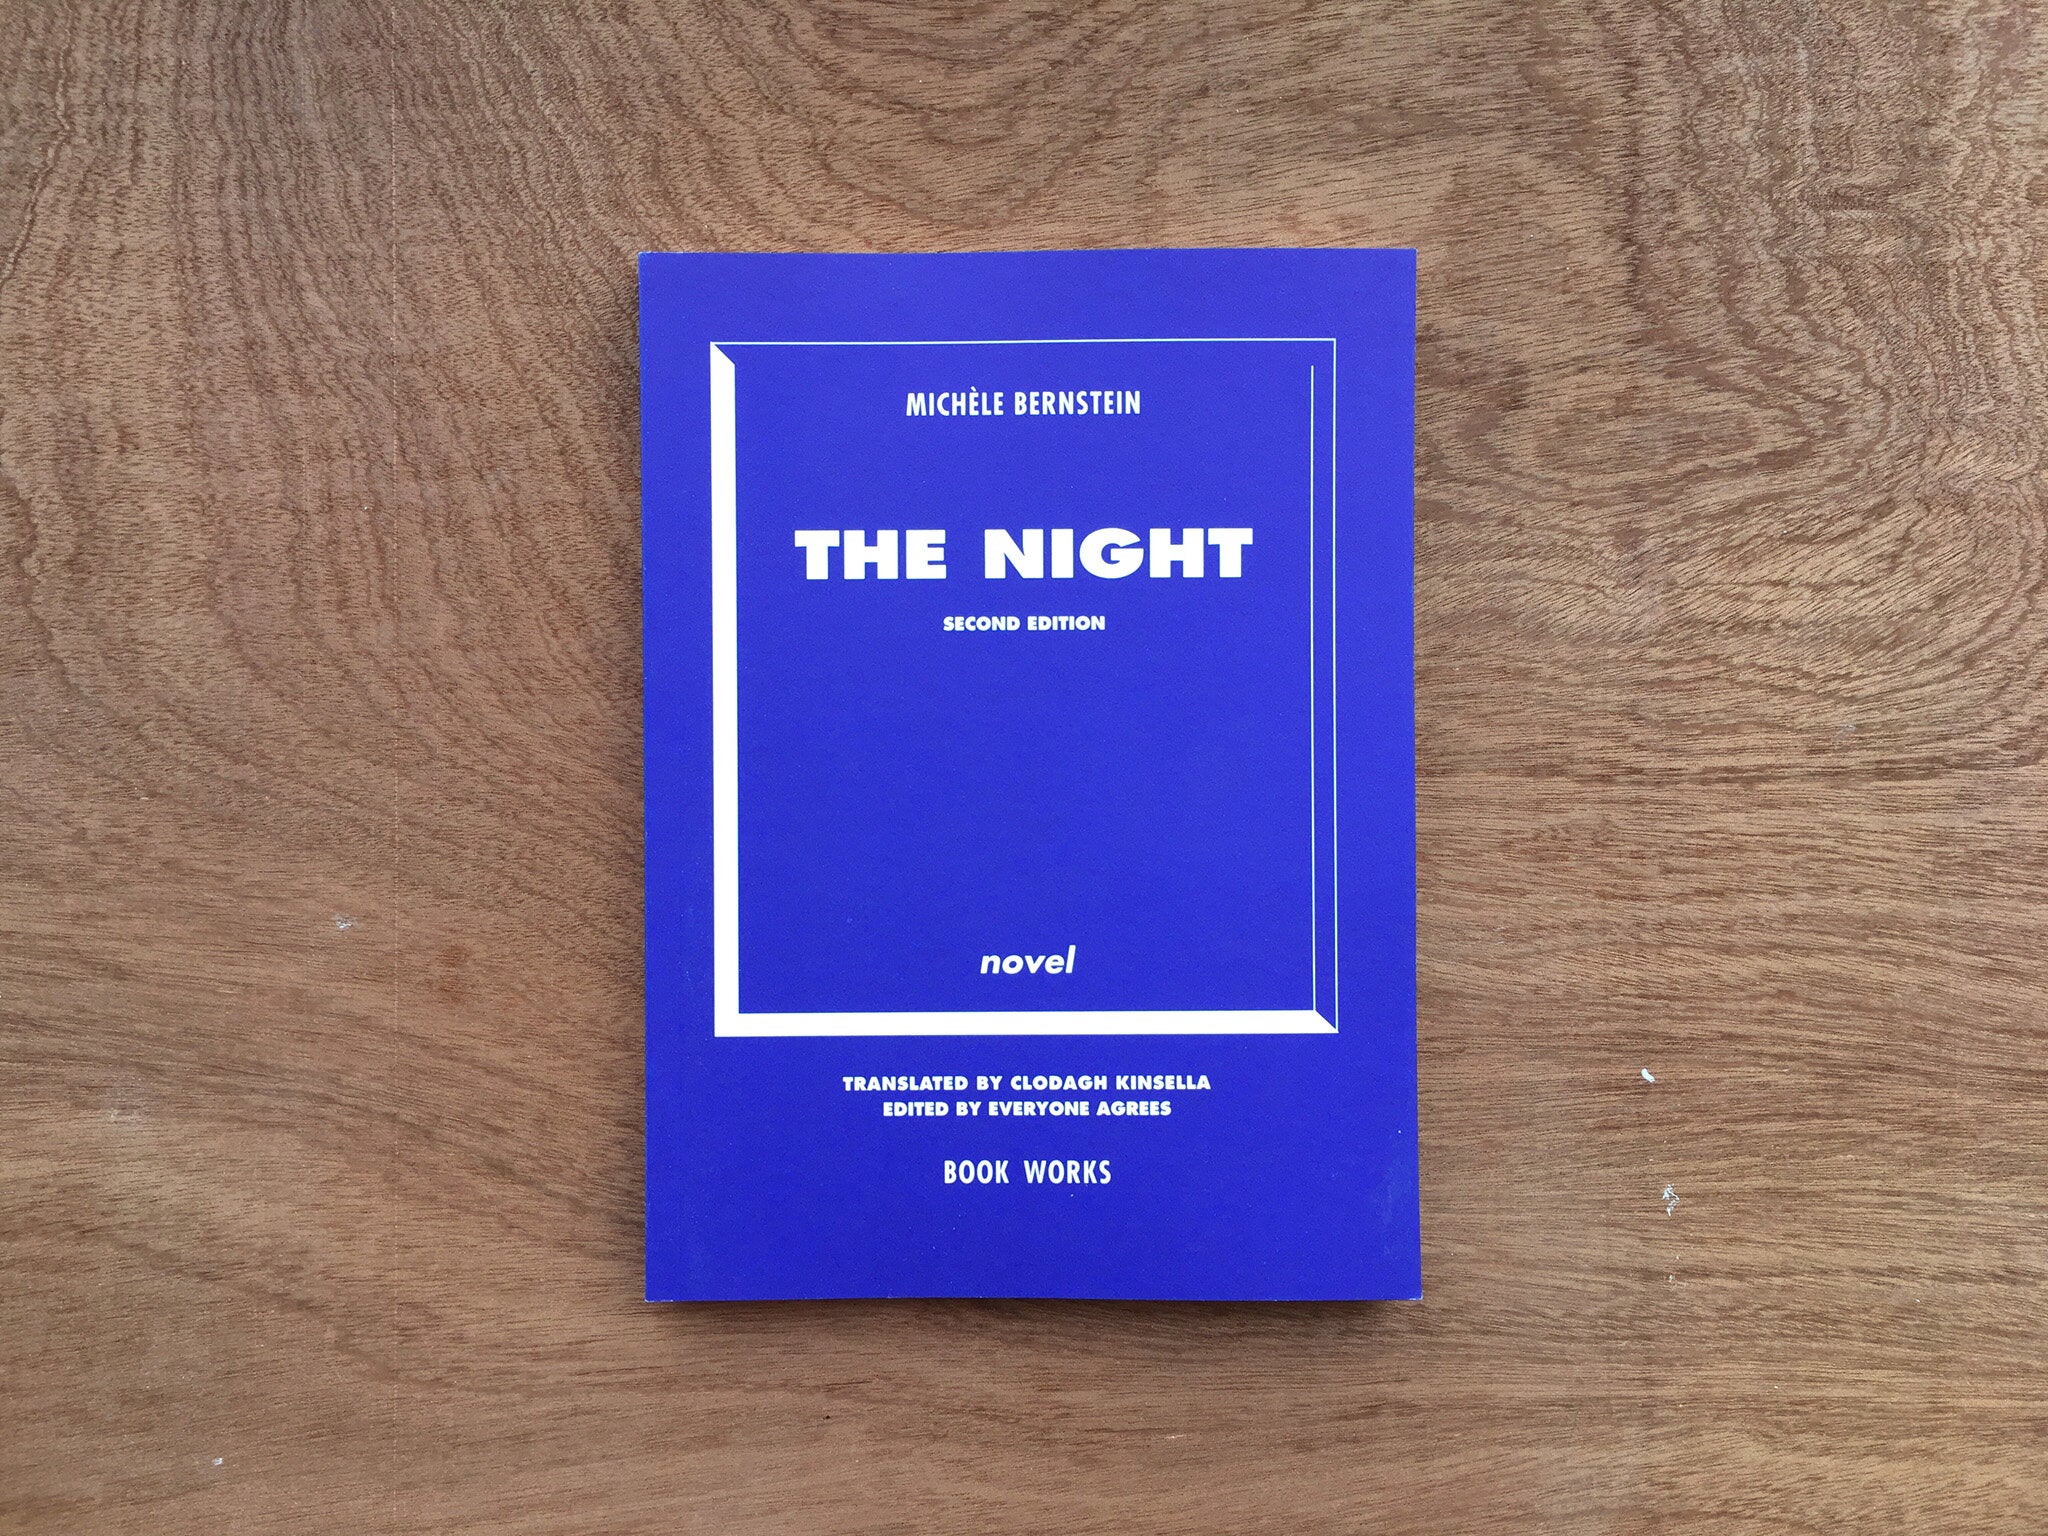 THE NIGHT by Michéle Bernstein